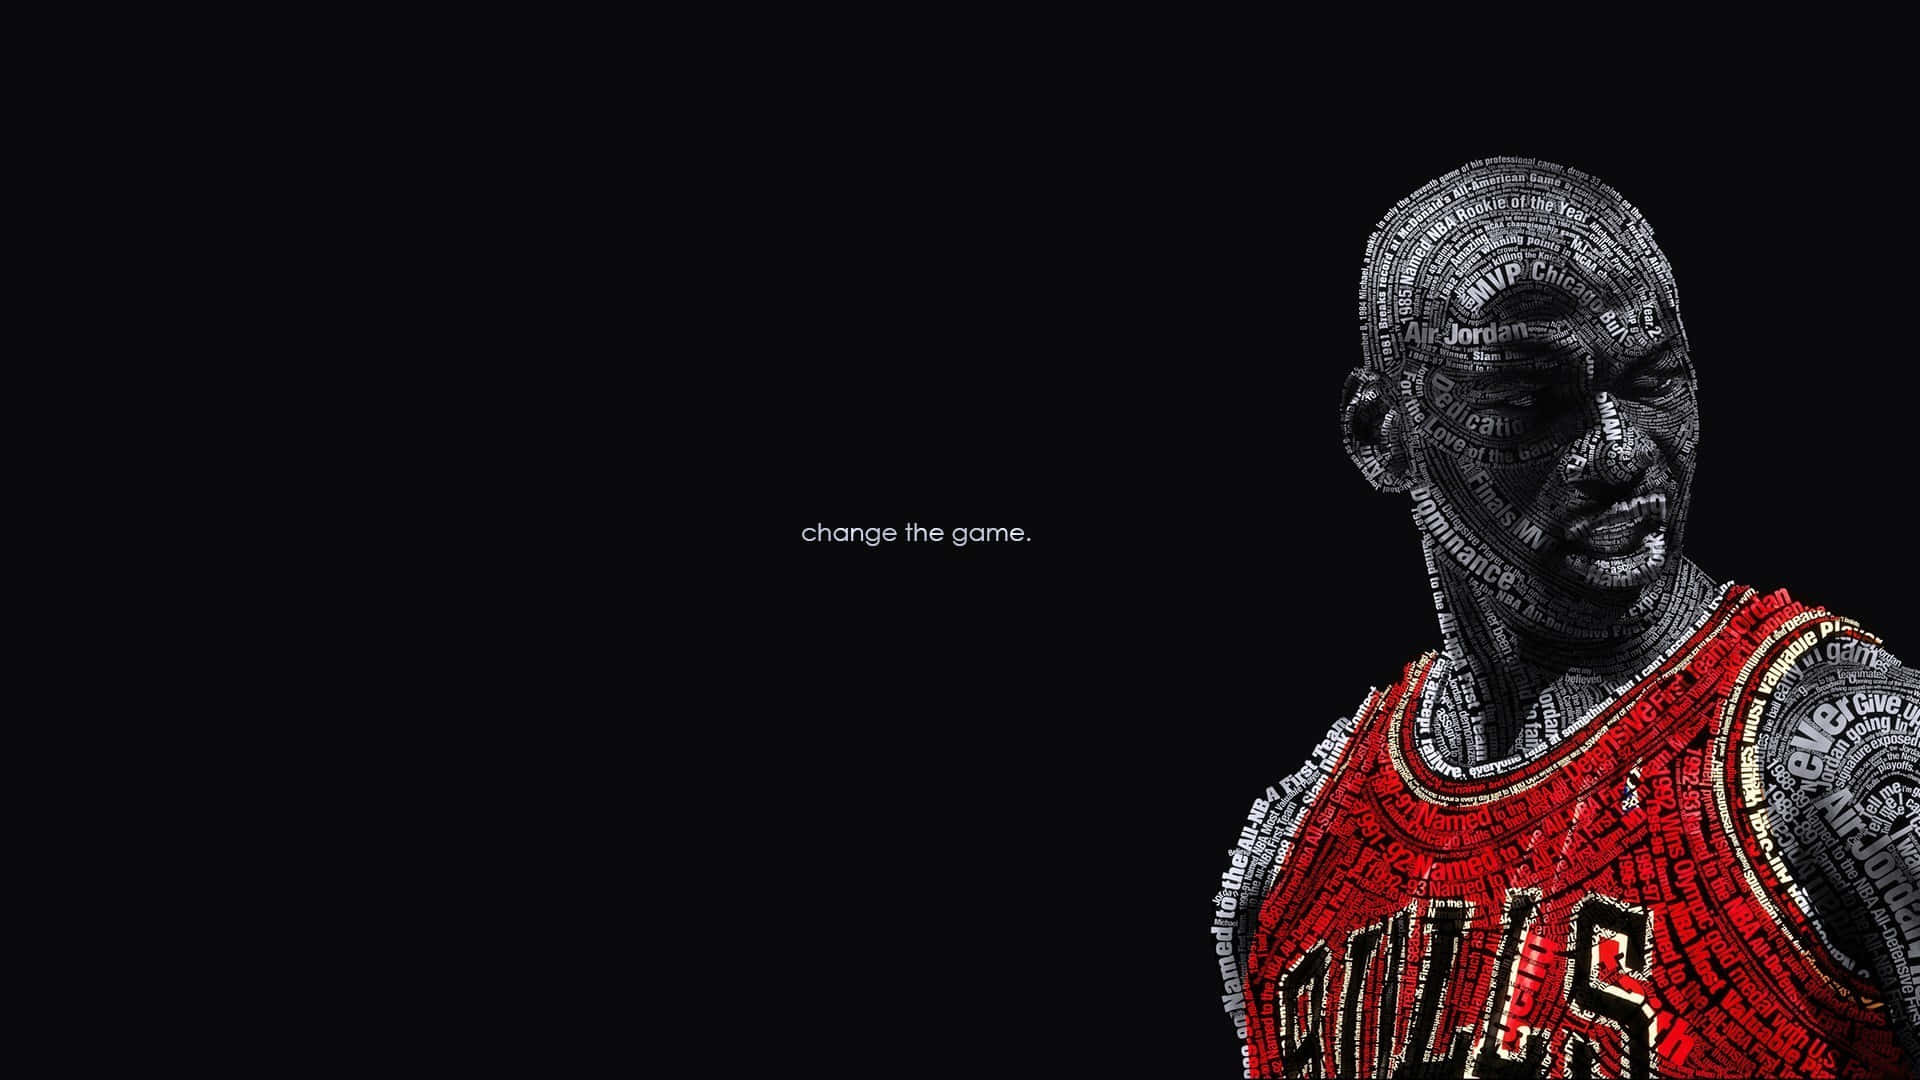 Black Basketball Michael Jordan Wallpaper